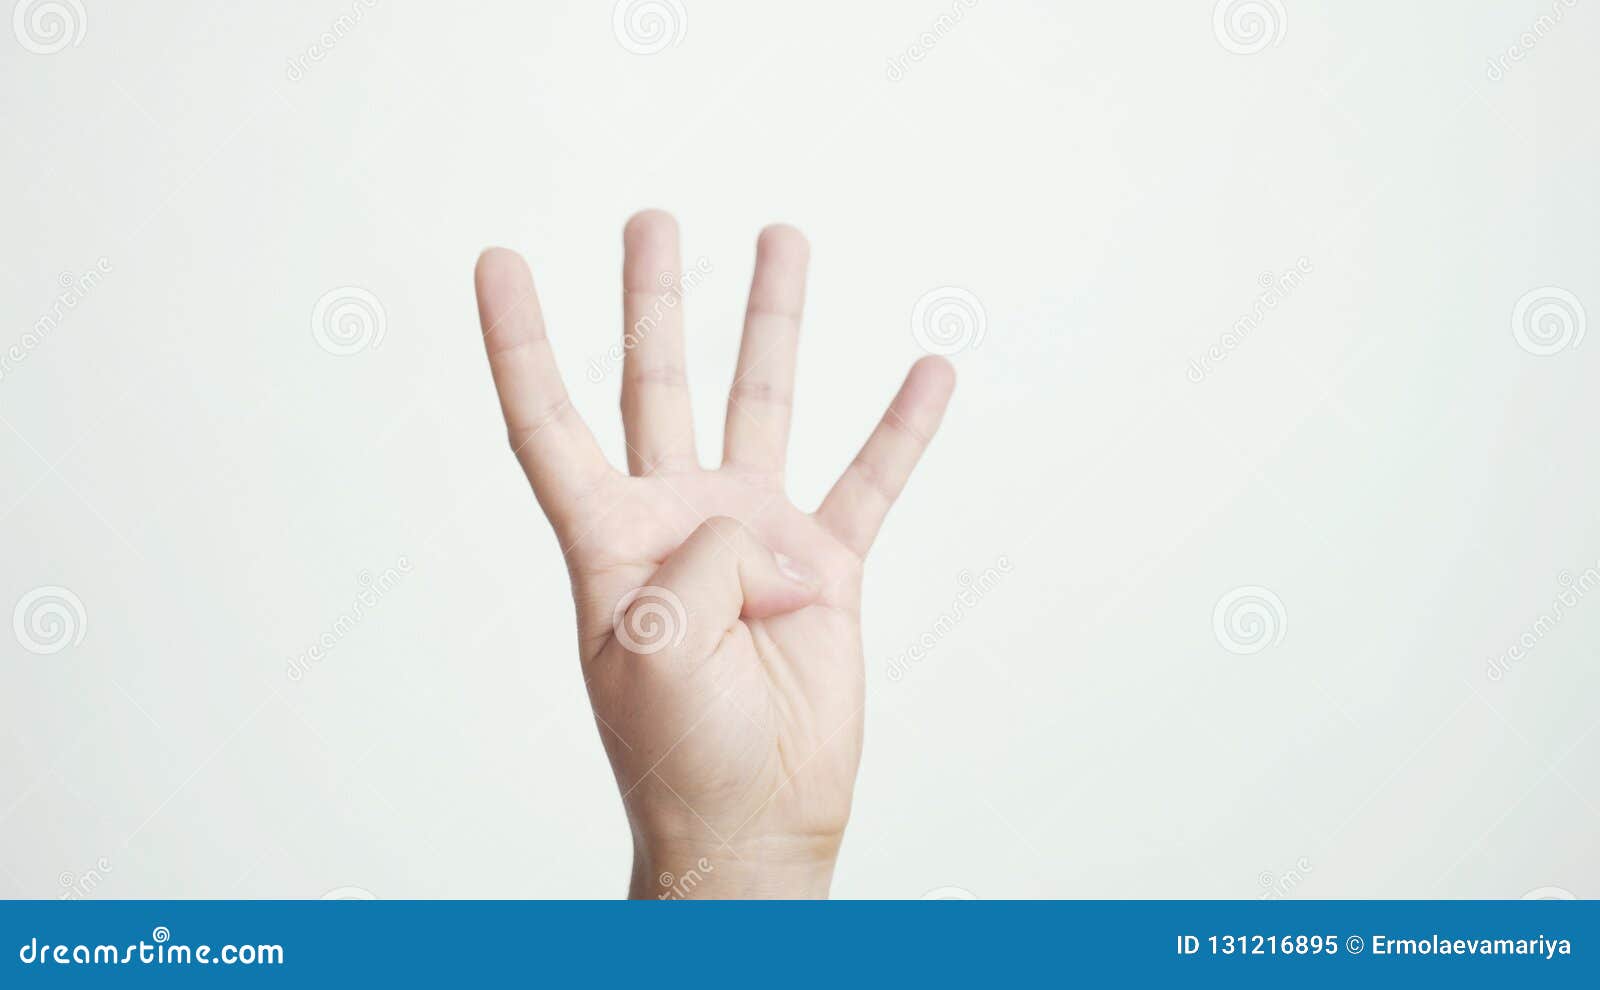 2 2 четыре пальца